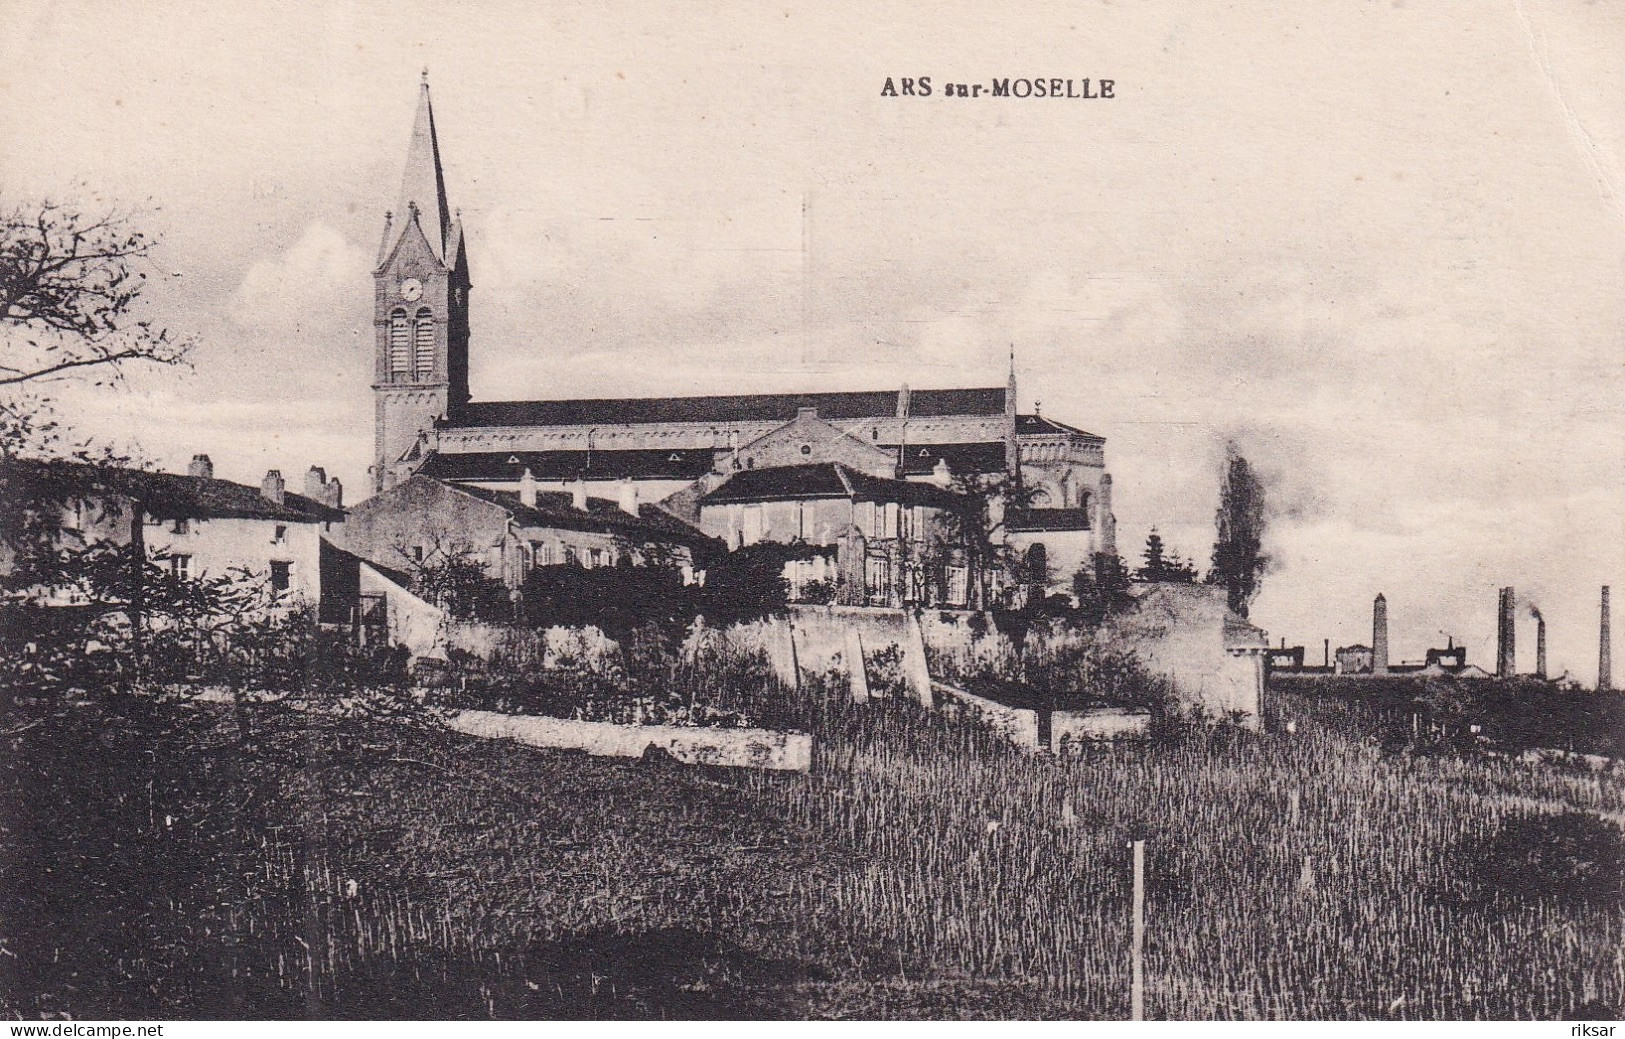 ARS SUR MOSELLE - Ars Sur Moselle